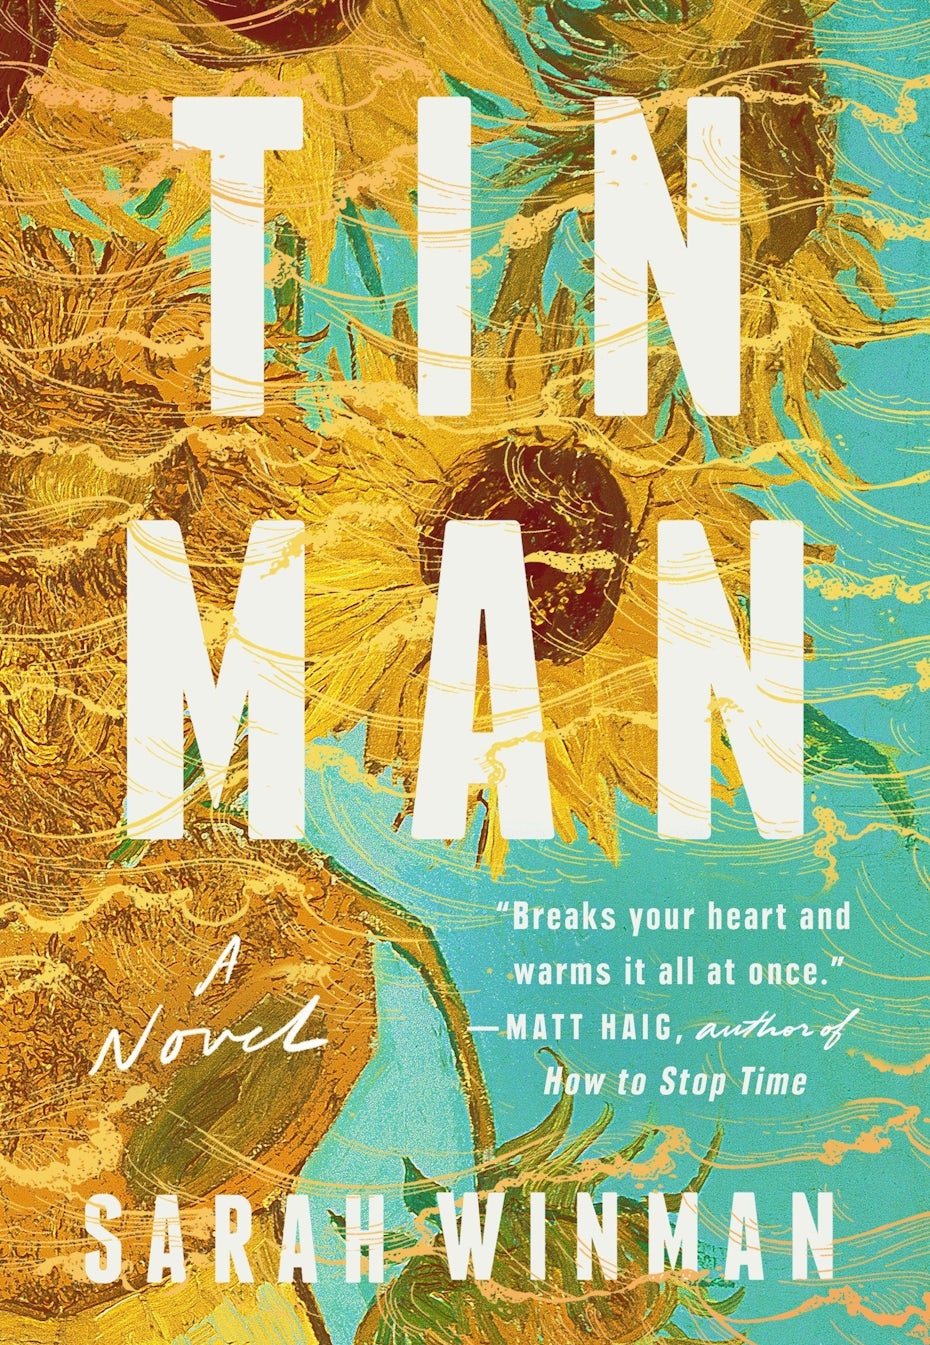 Tin man book cover